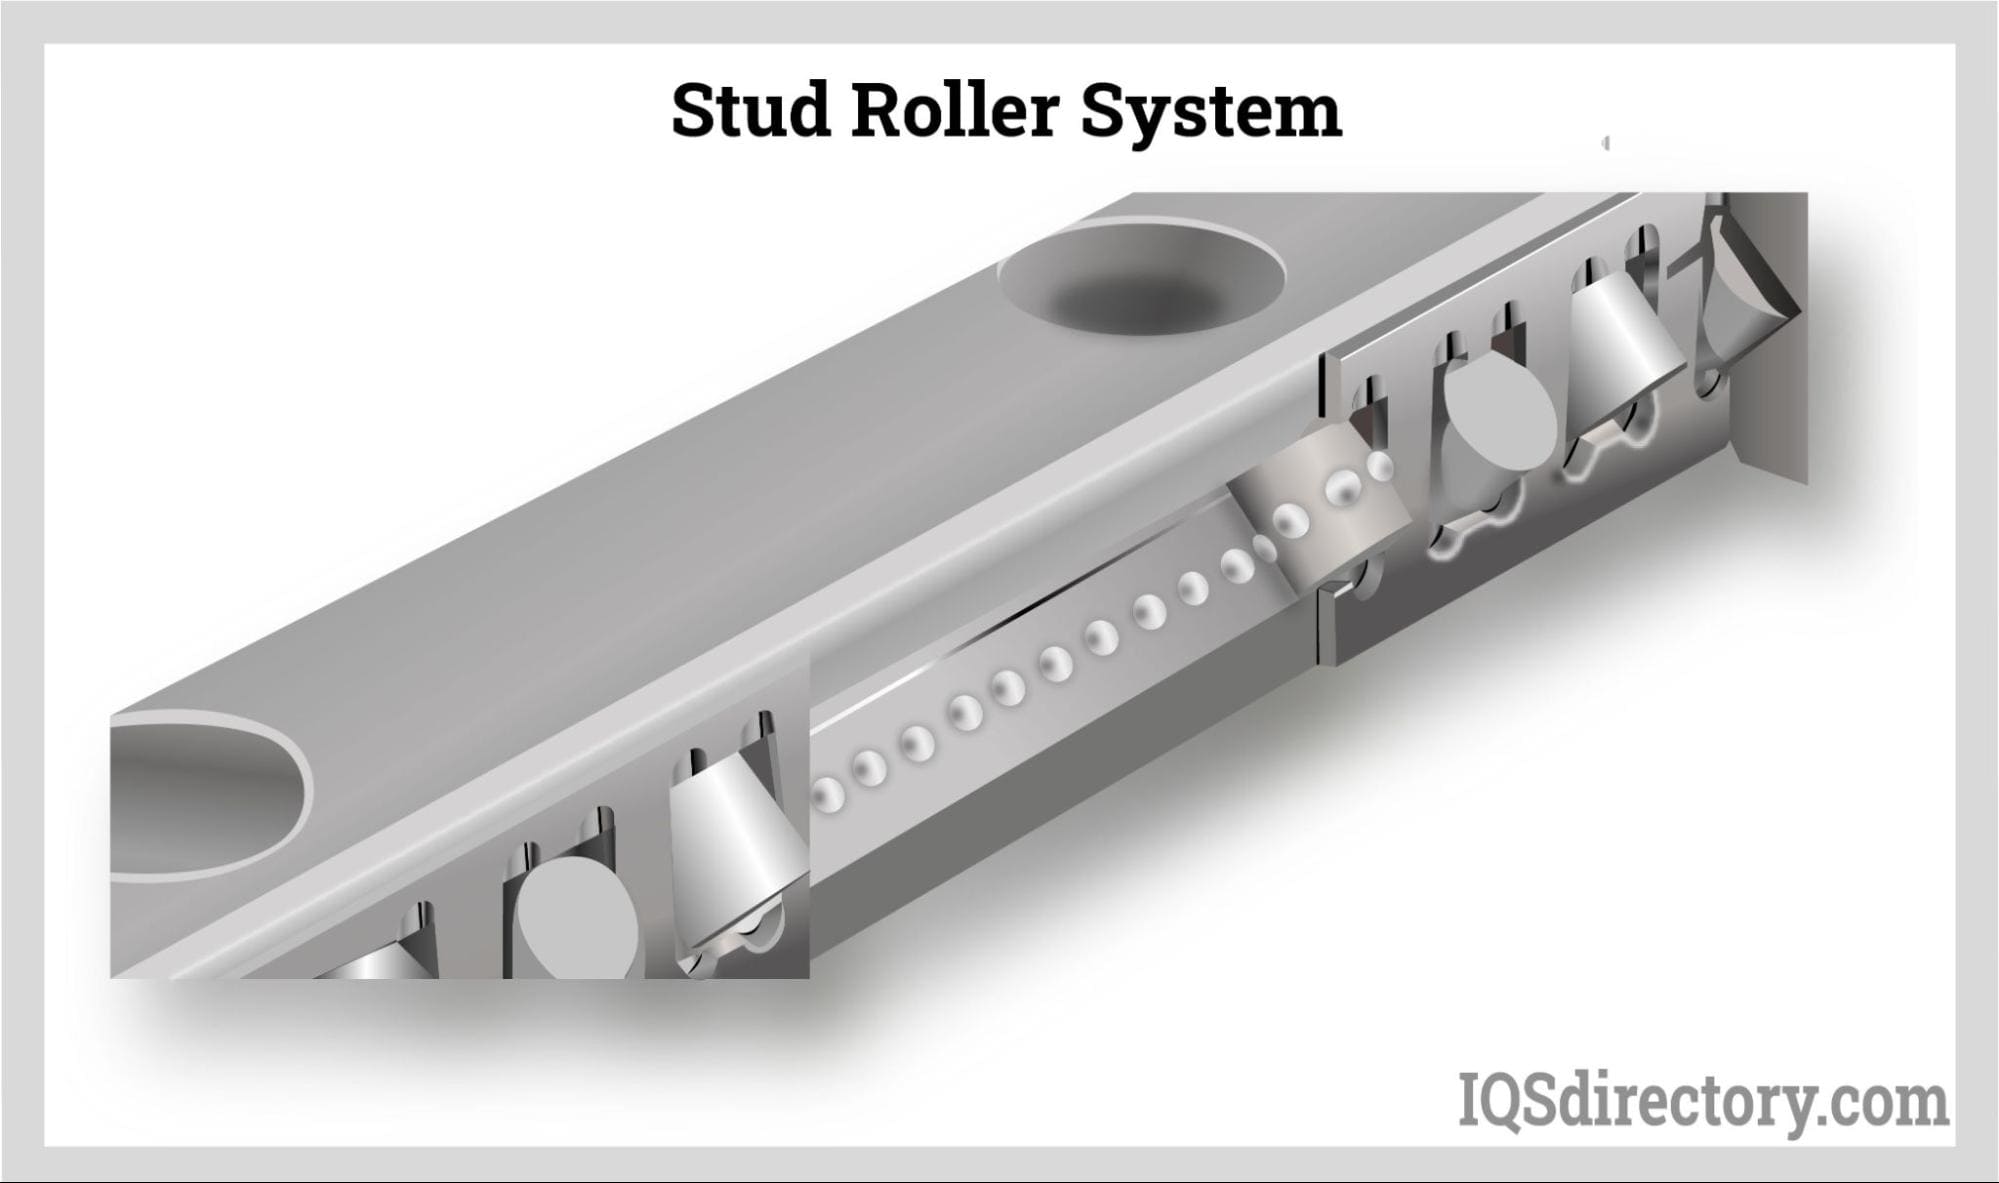 Stud Roller System